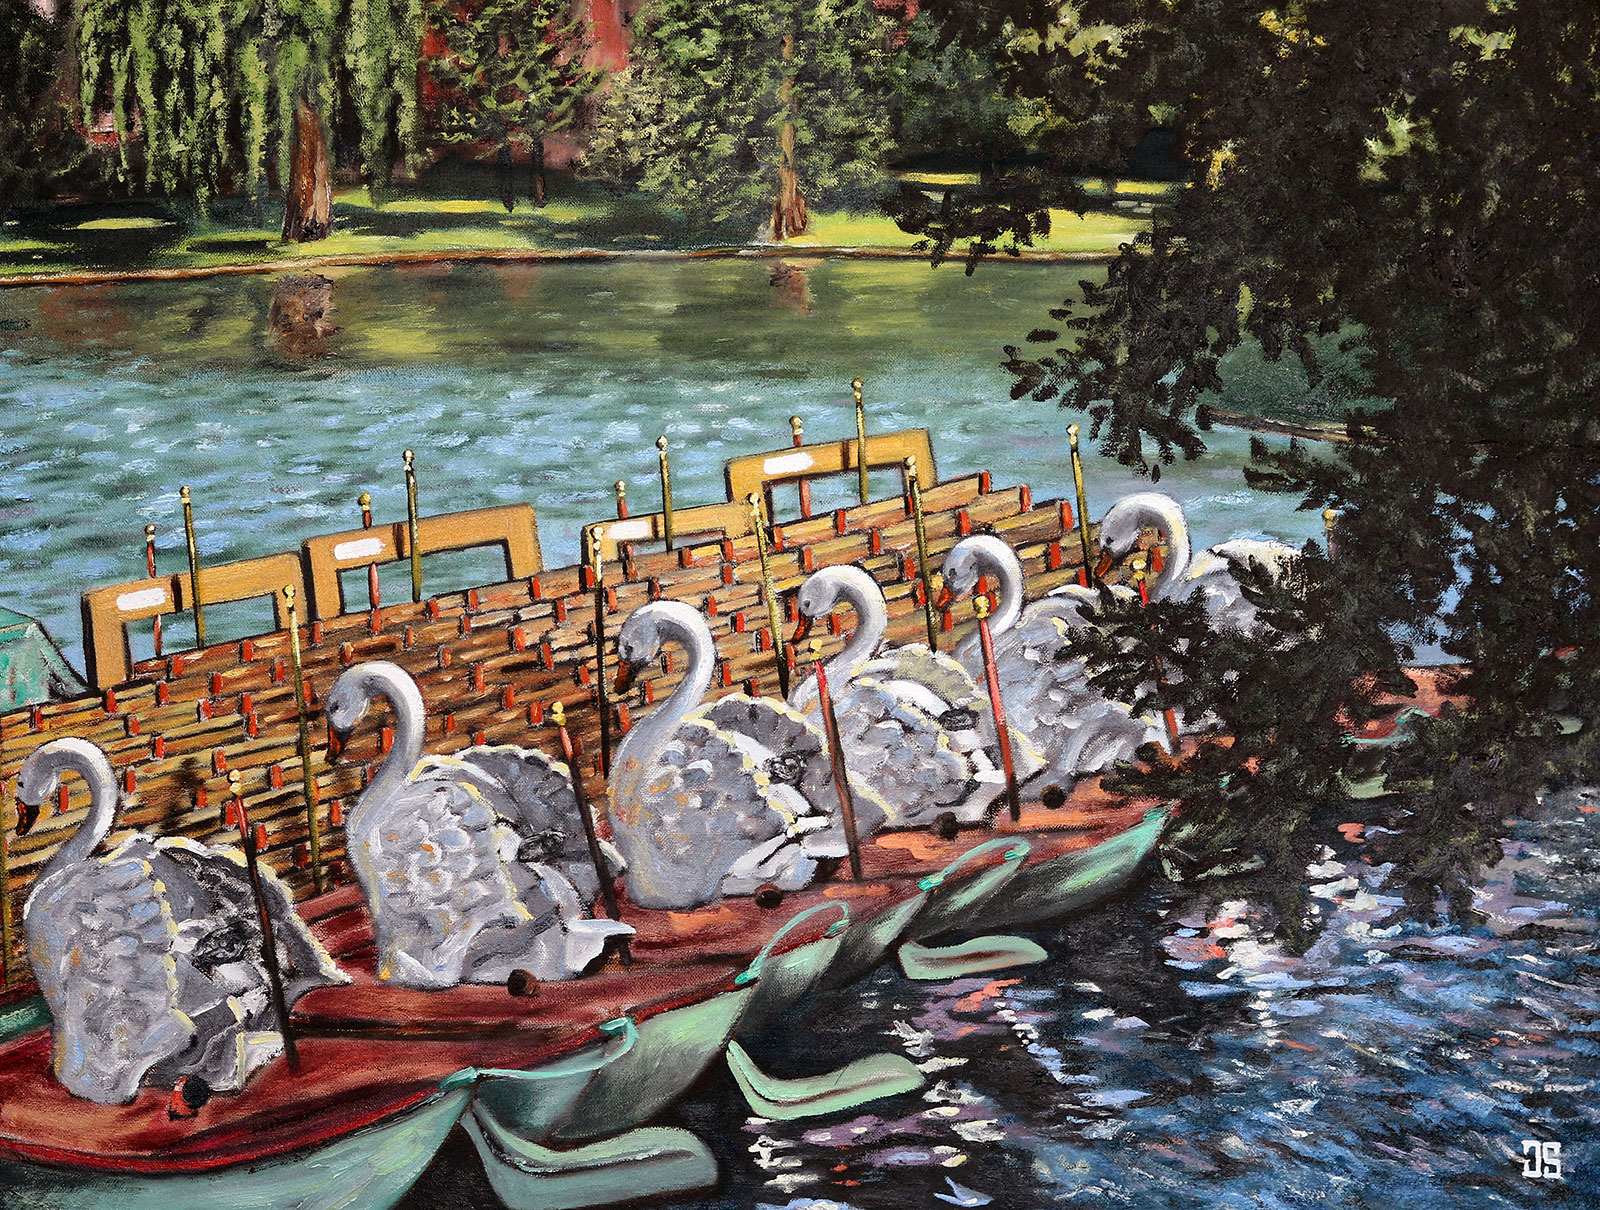 Oil painting "Swan Boats in Boston Public Garden" by Jeffrey Dale Starr